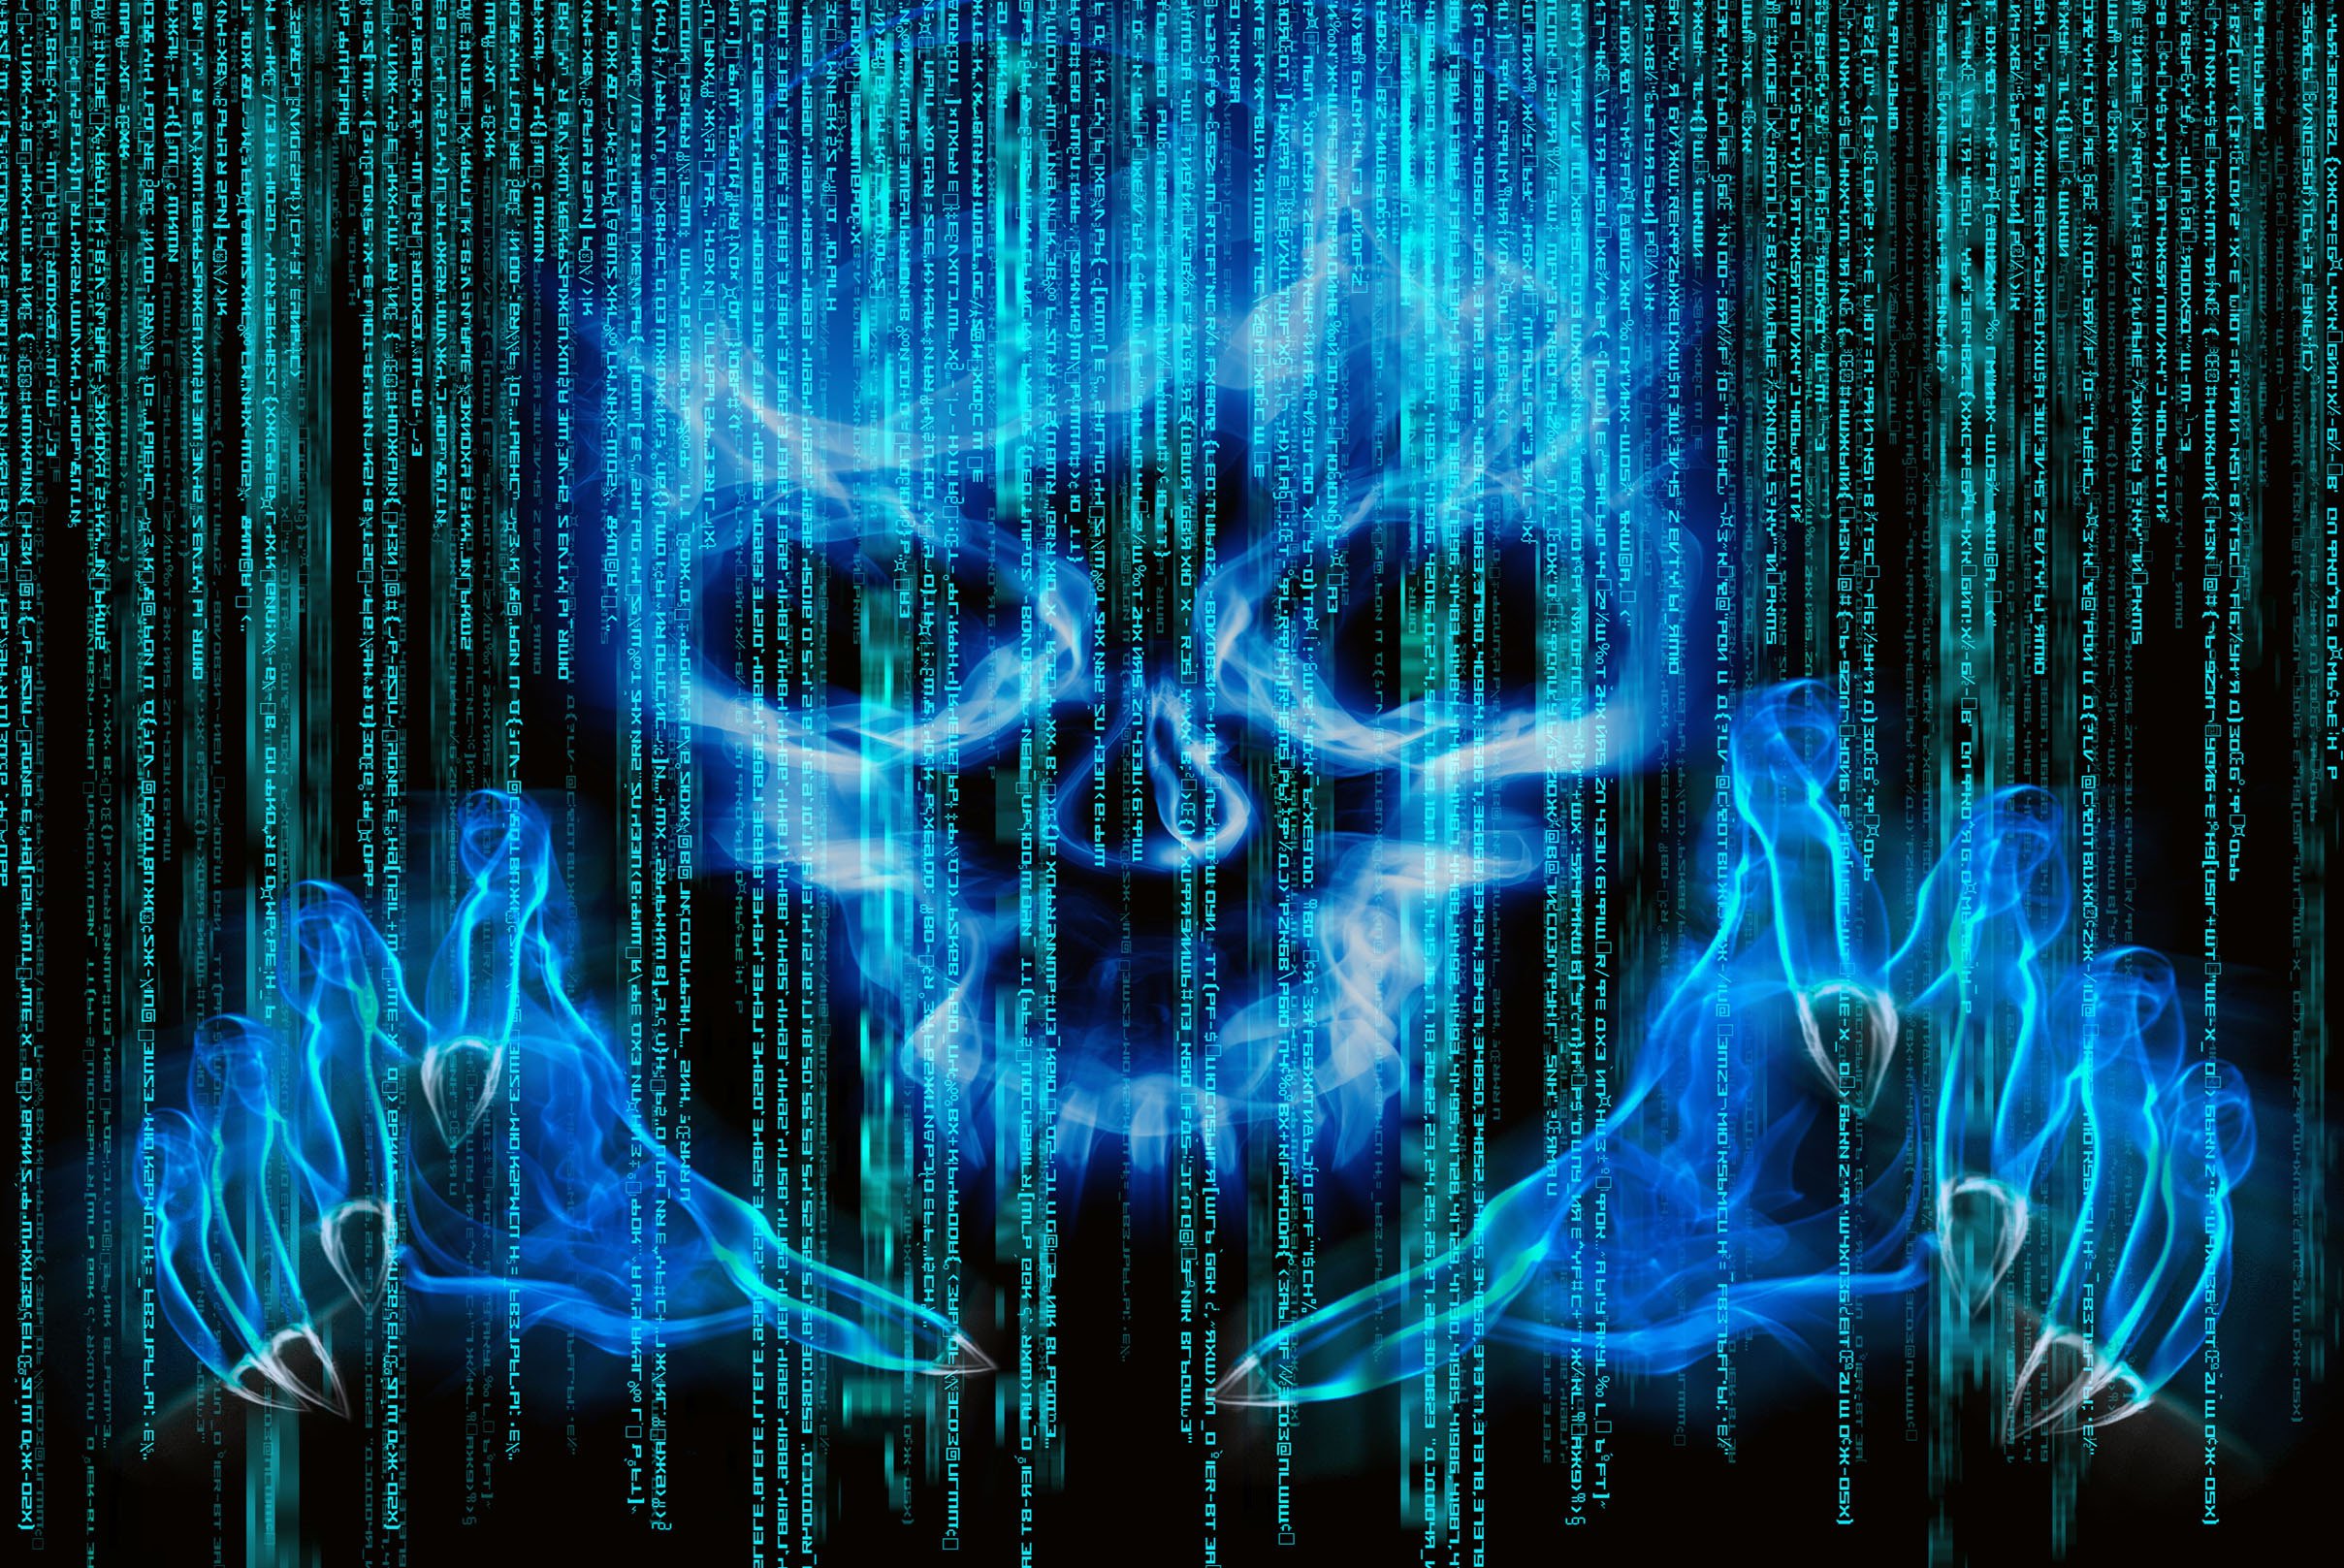  cyber hacker hacking virus dark sadic internet wallpaper background